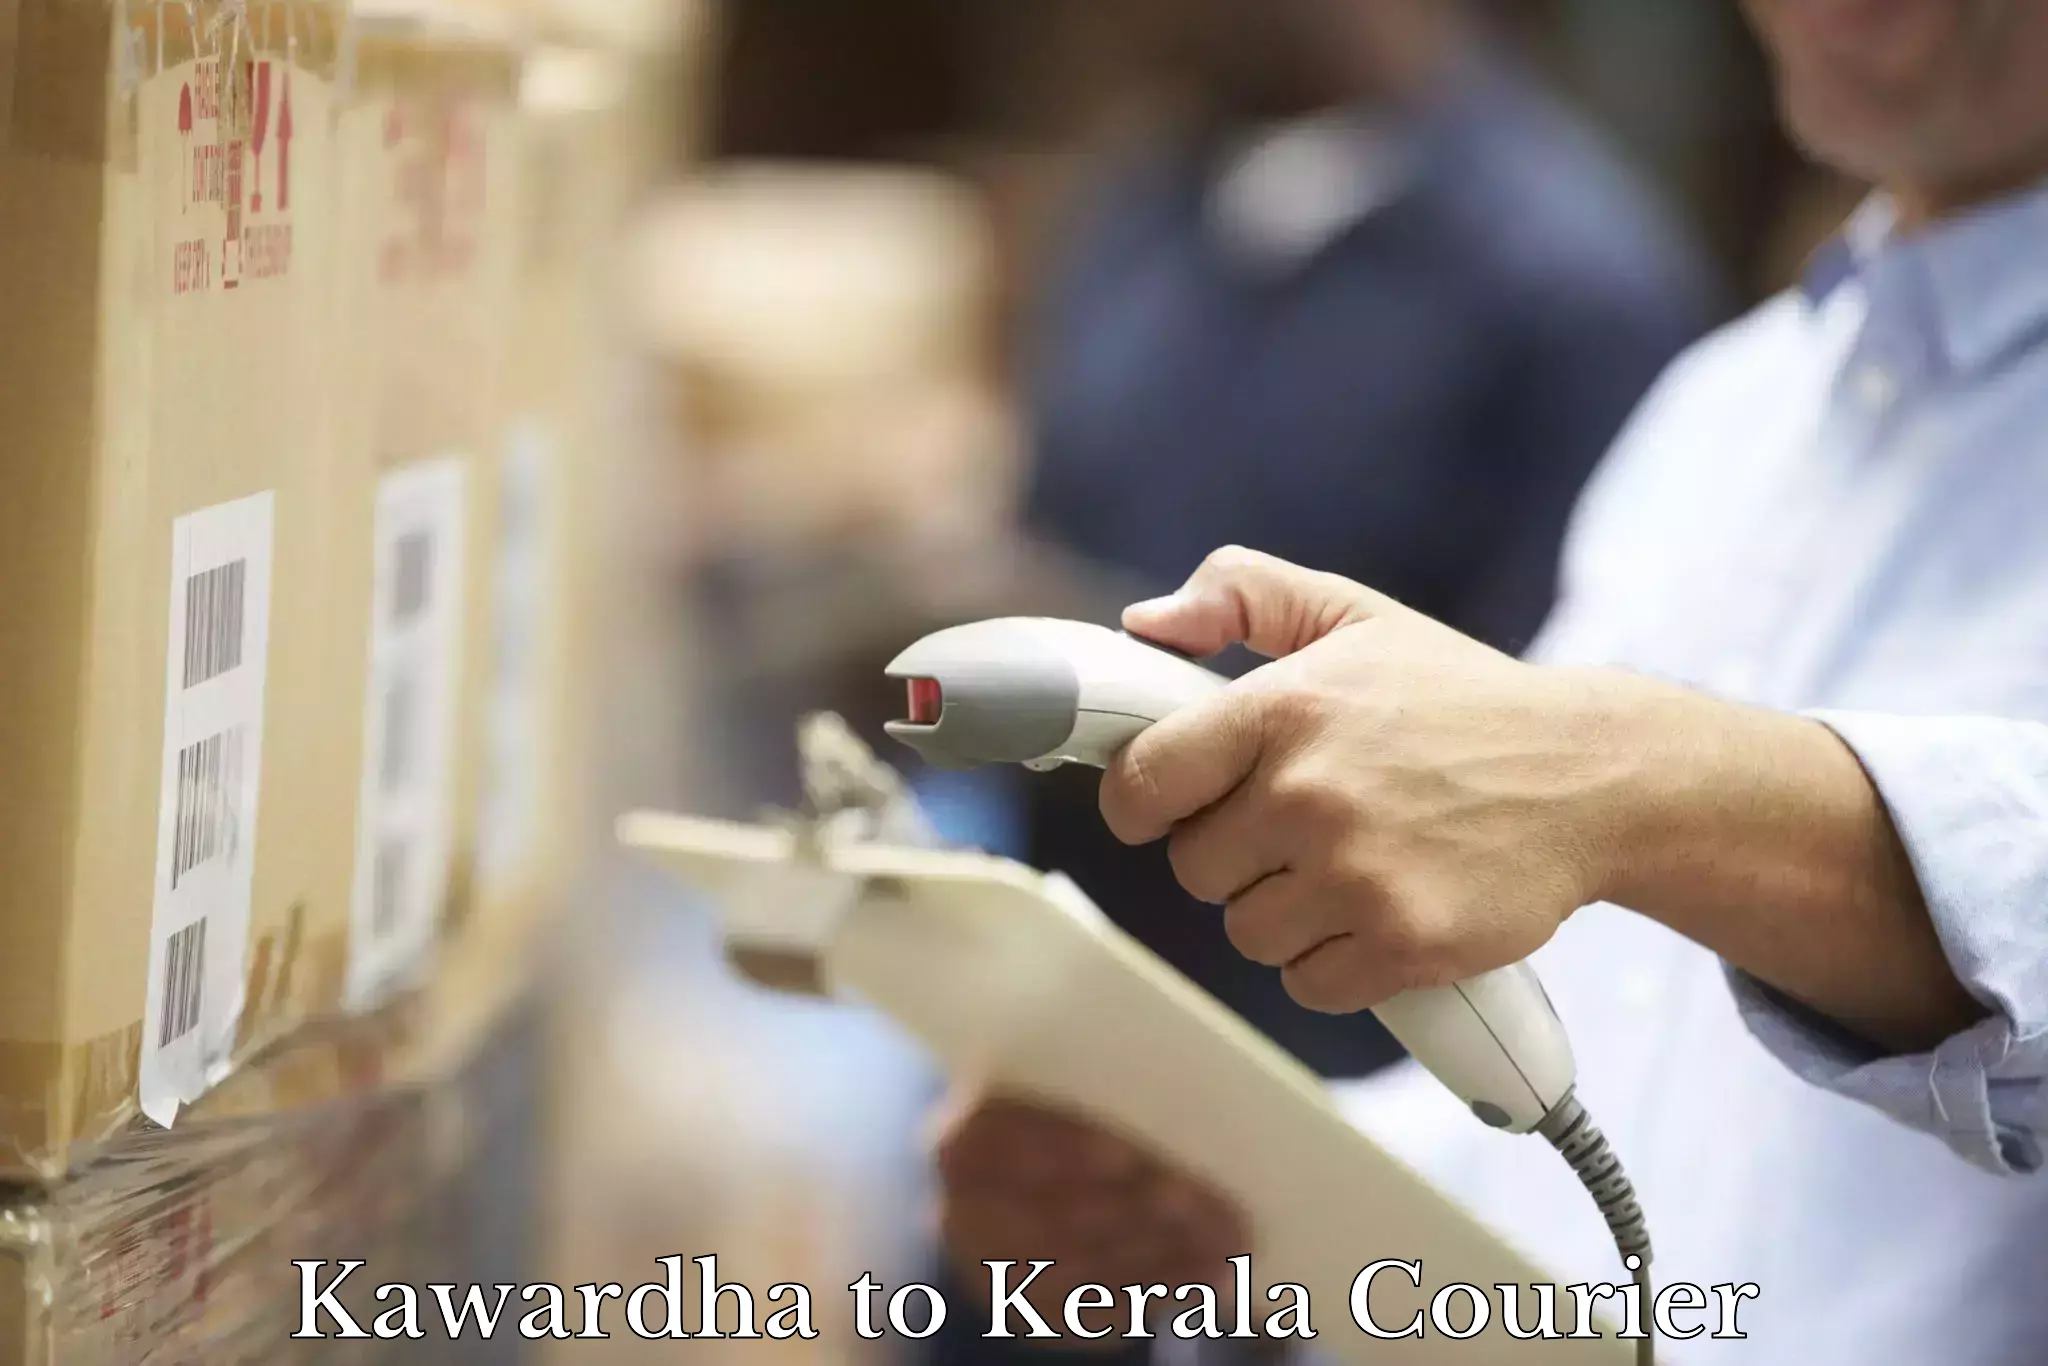 High-priority parcel service Kawardha to Palai